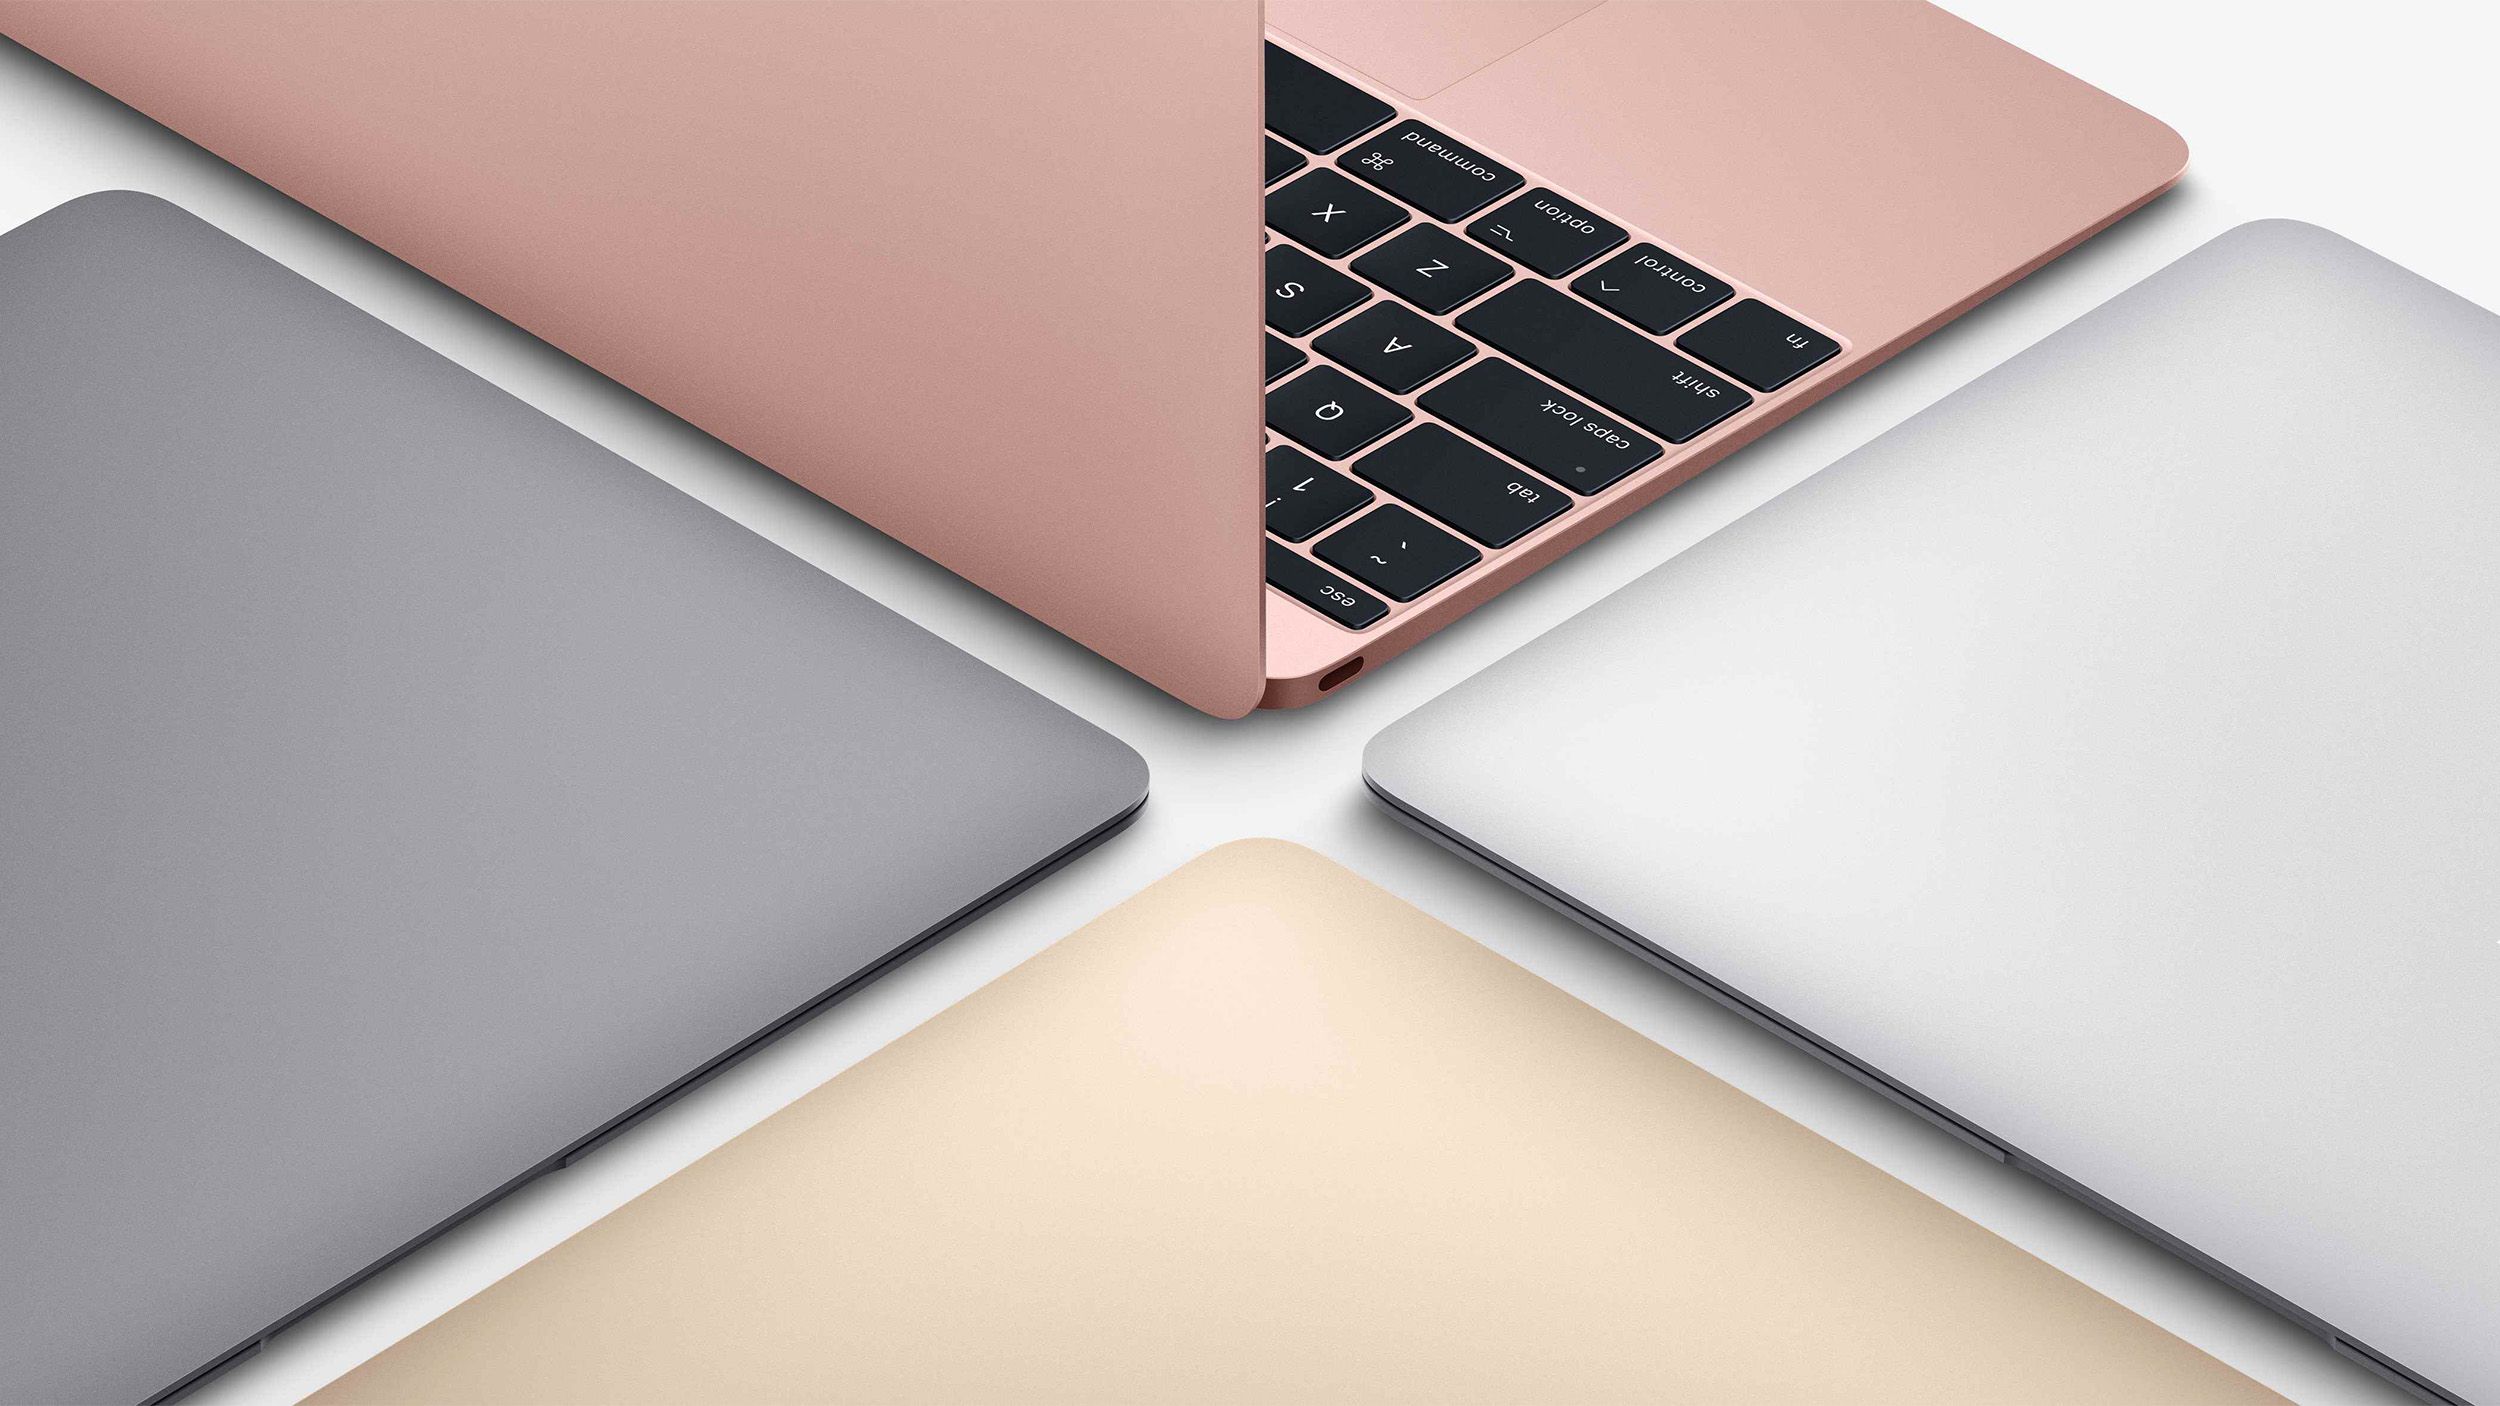 Apple descontinuou o MacBook de 12 polegadas há três anos